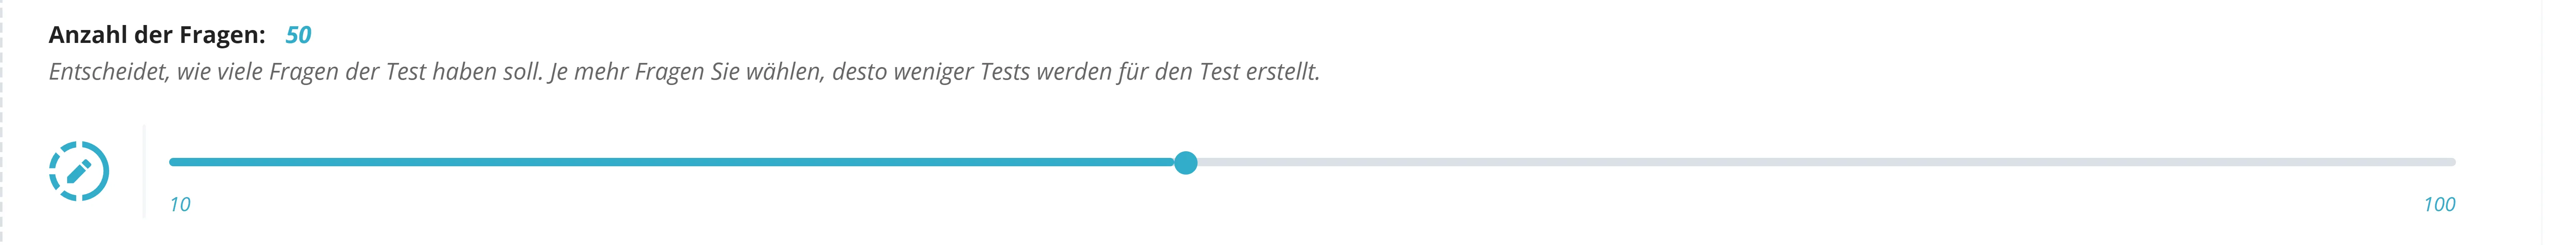 Hier ist ein Screenshot der Testanzahlauswahl von dem Sport und Gesundheit Praxistest für benutzerdefinierte Testanzahlenauswahl